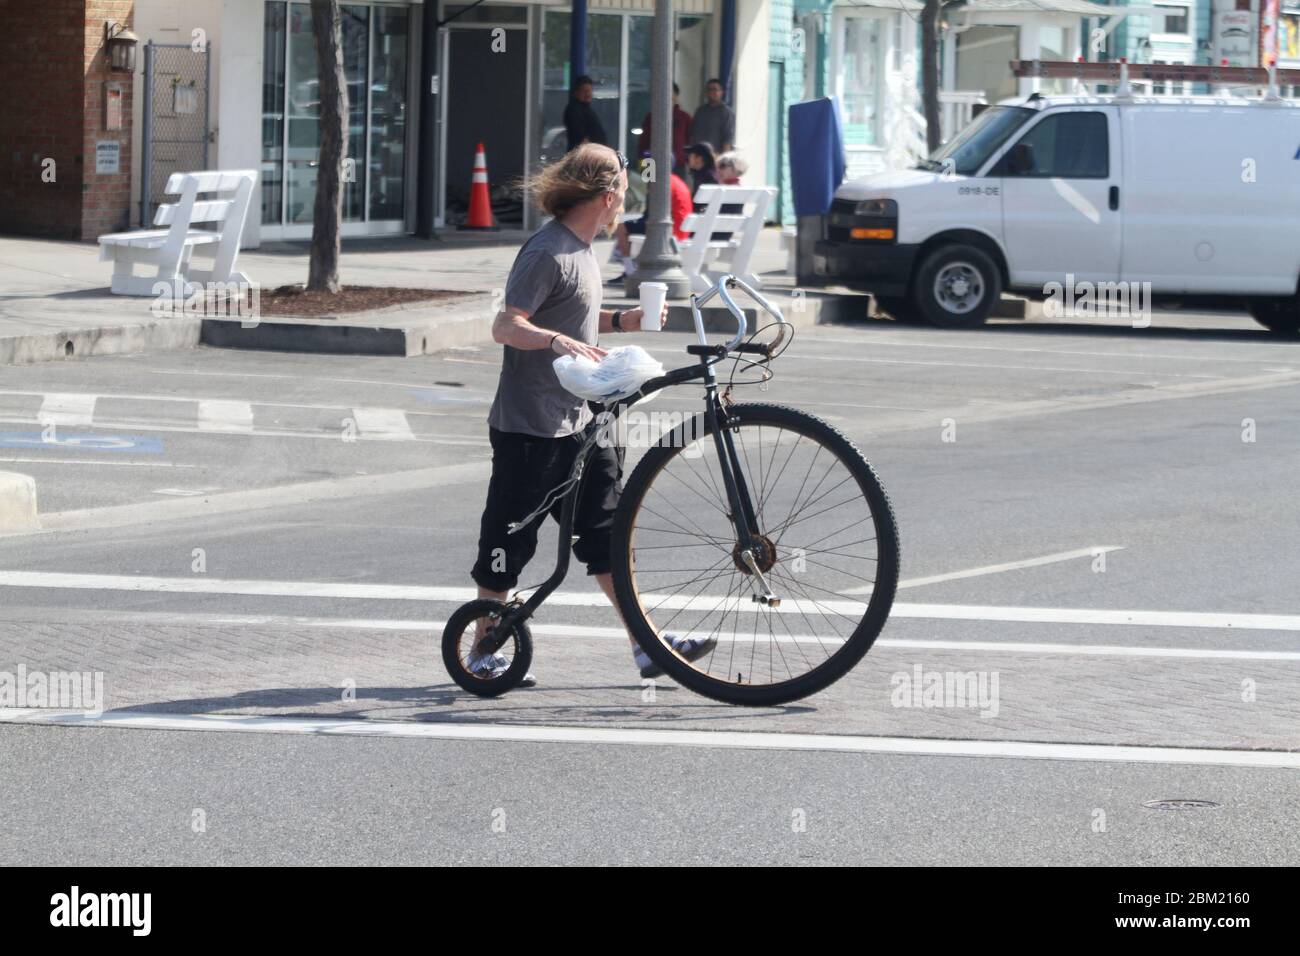 Uomo con una bicicletta a ruote alte (Penny-farthing) sulla strada in U.S.A. Foto Stock